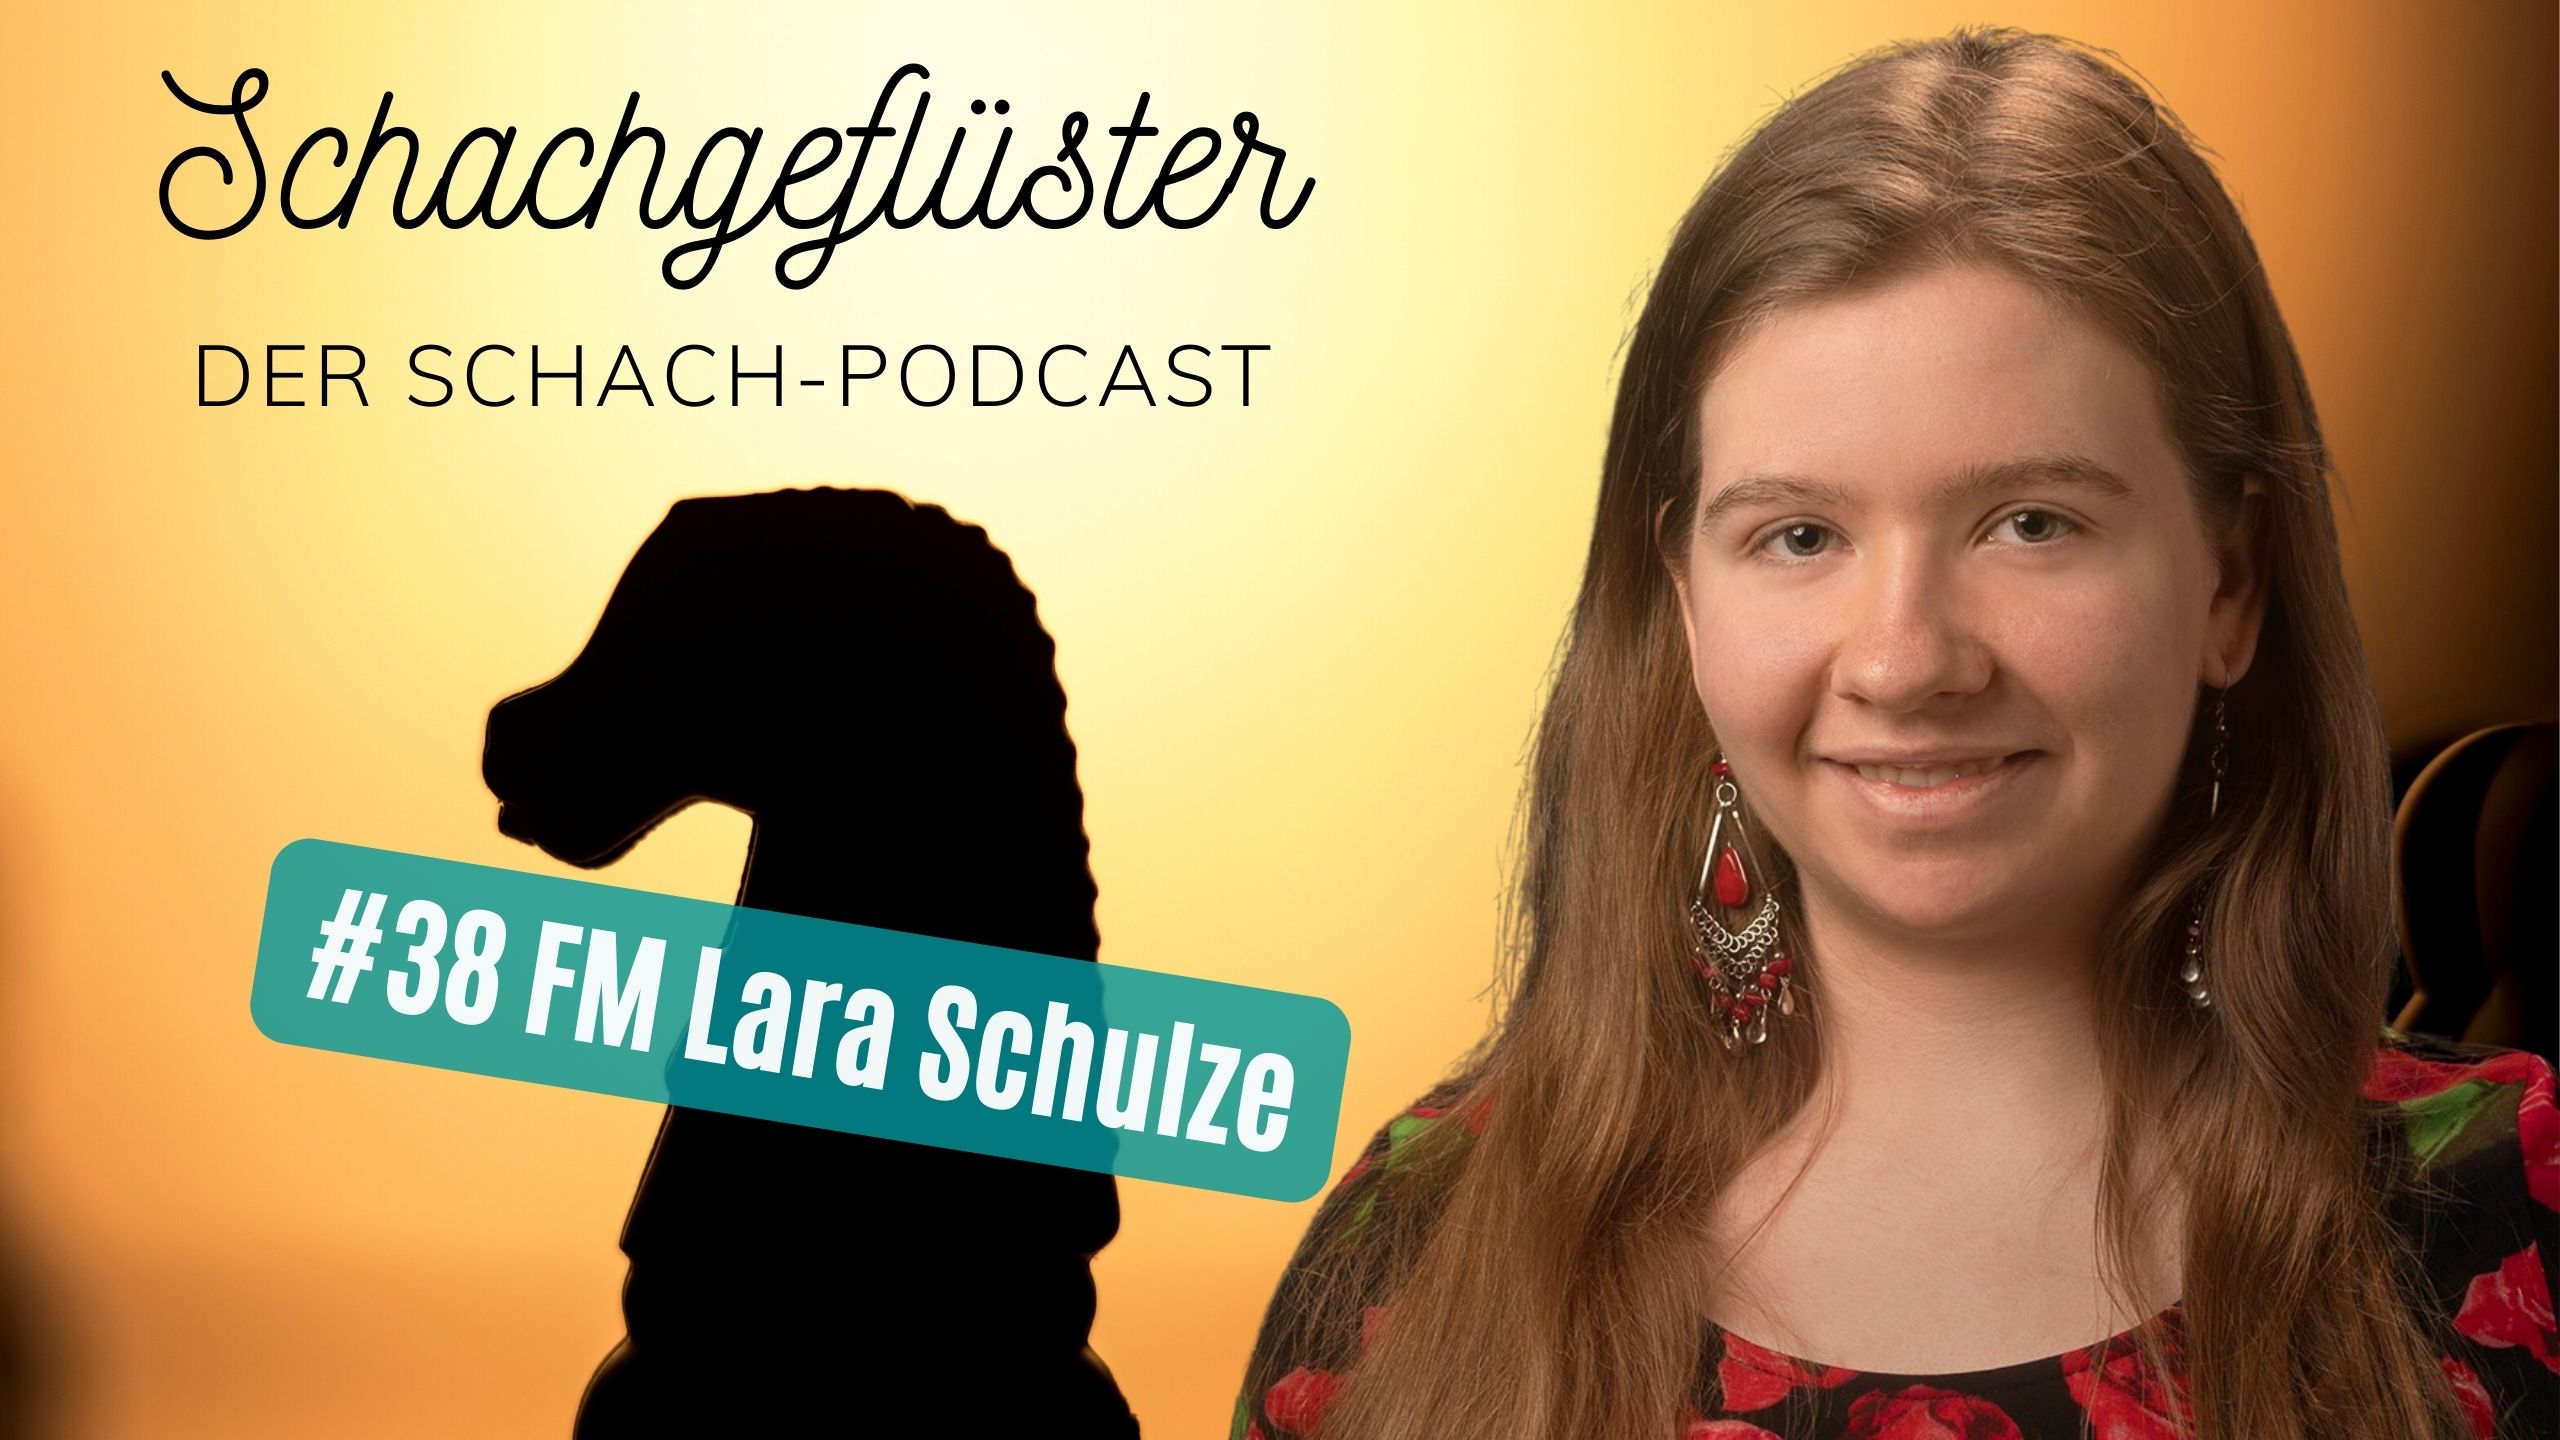 Lara Schulze und ihr Schachblog